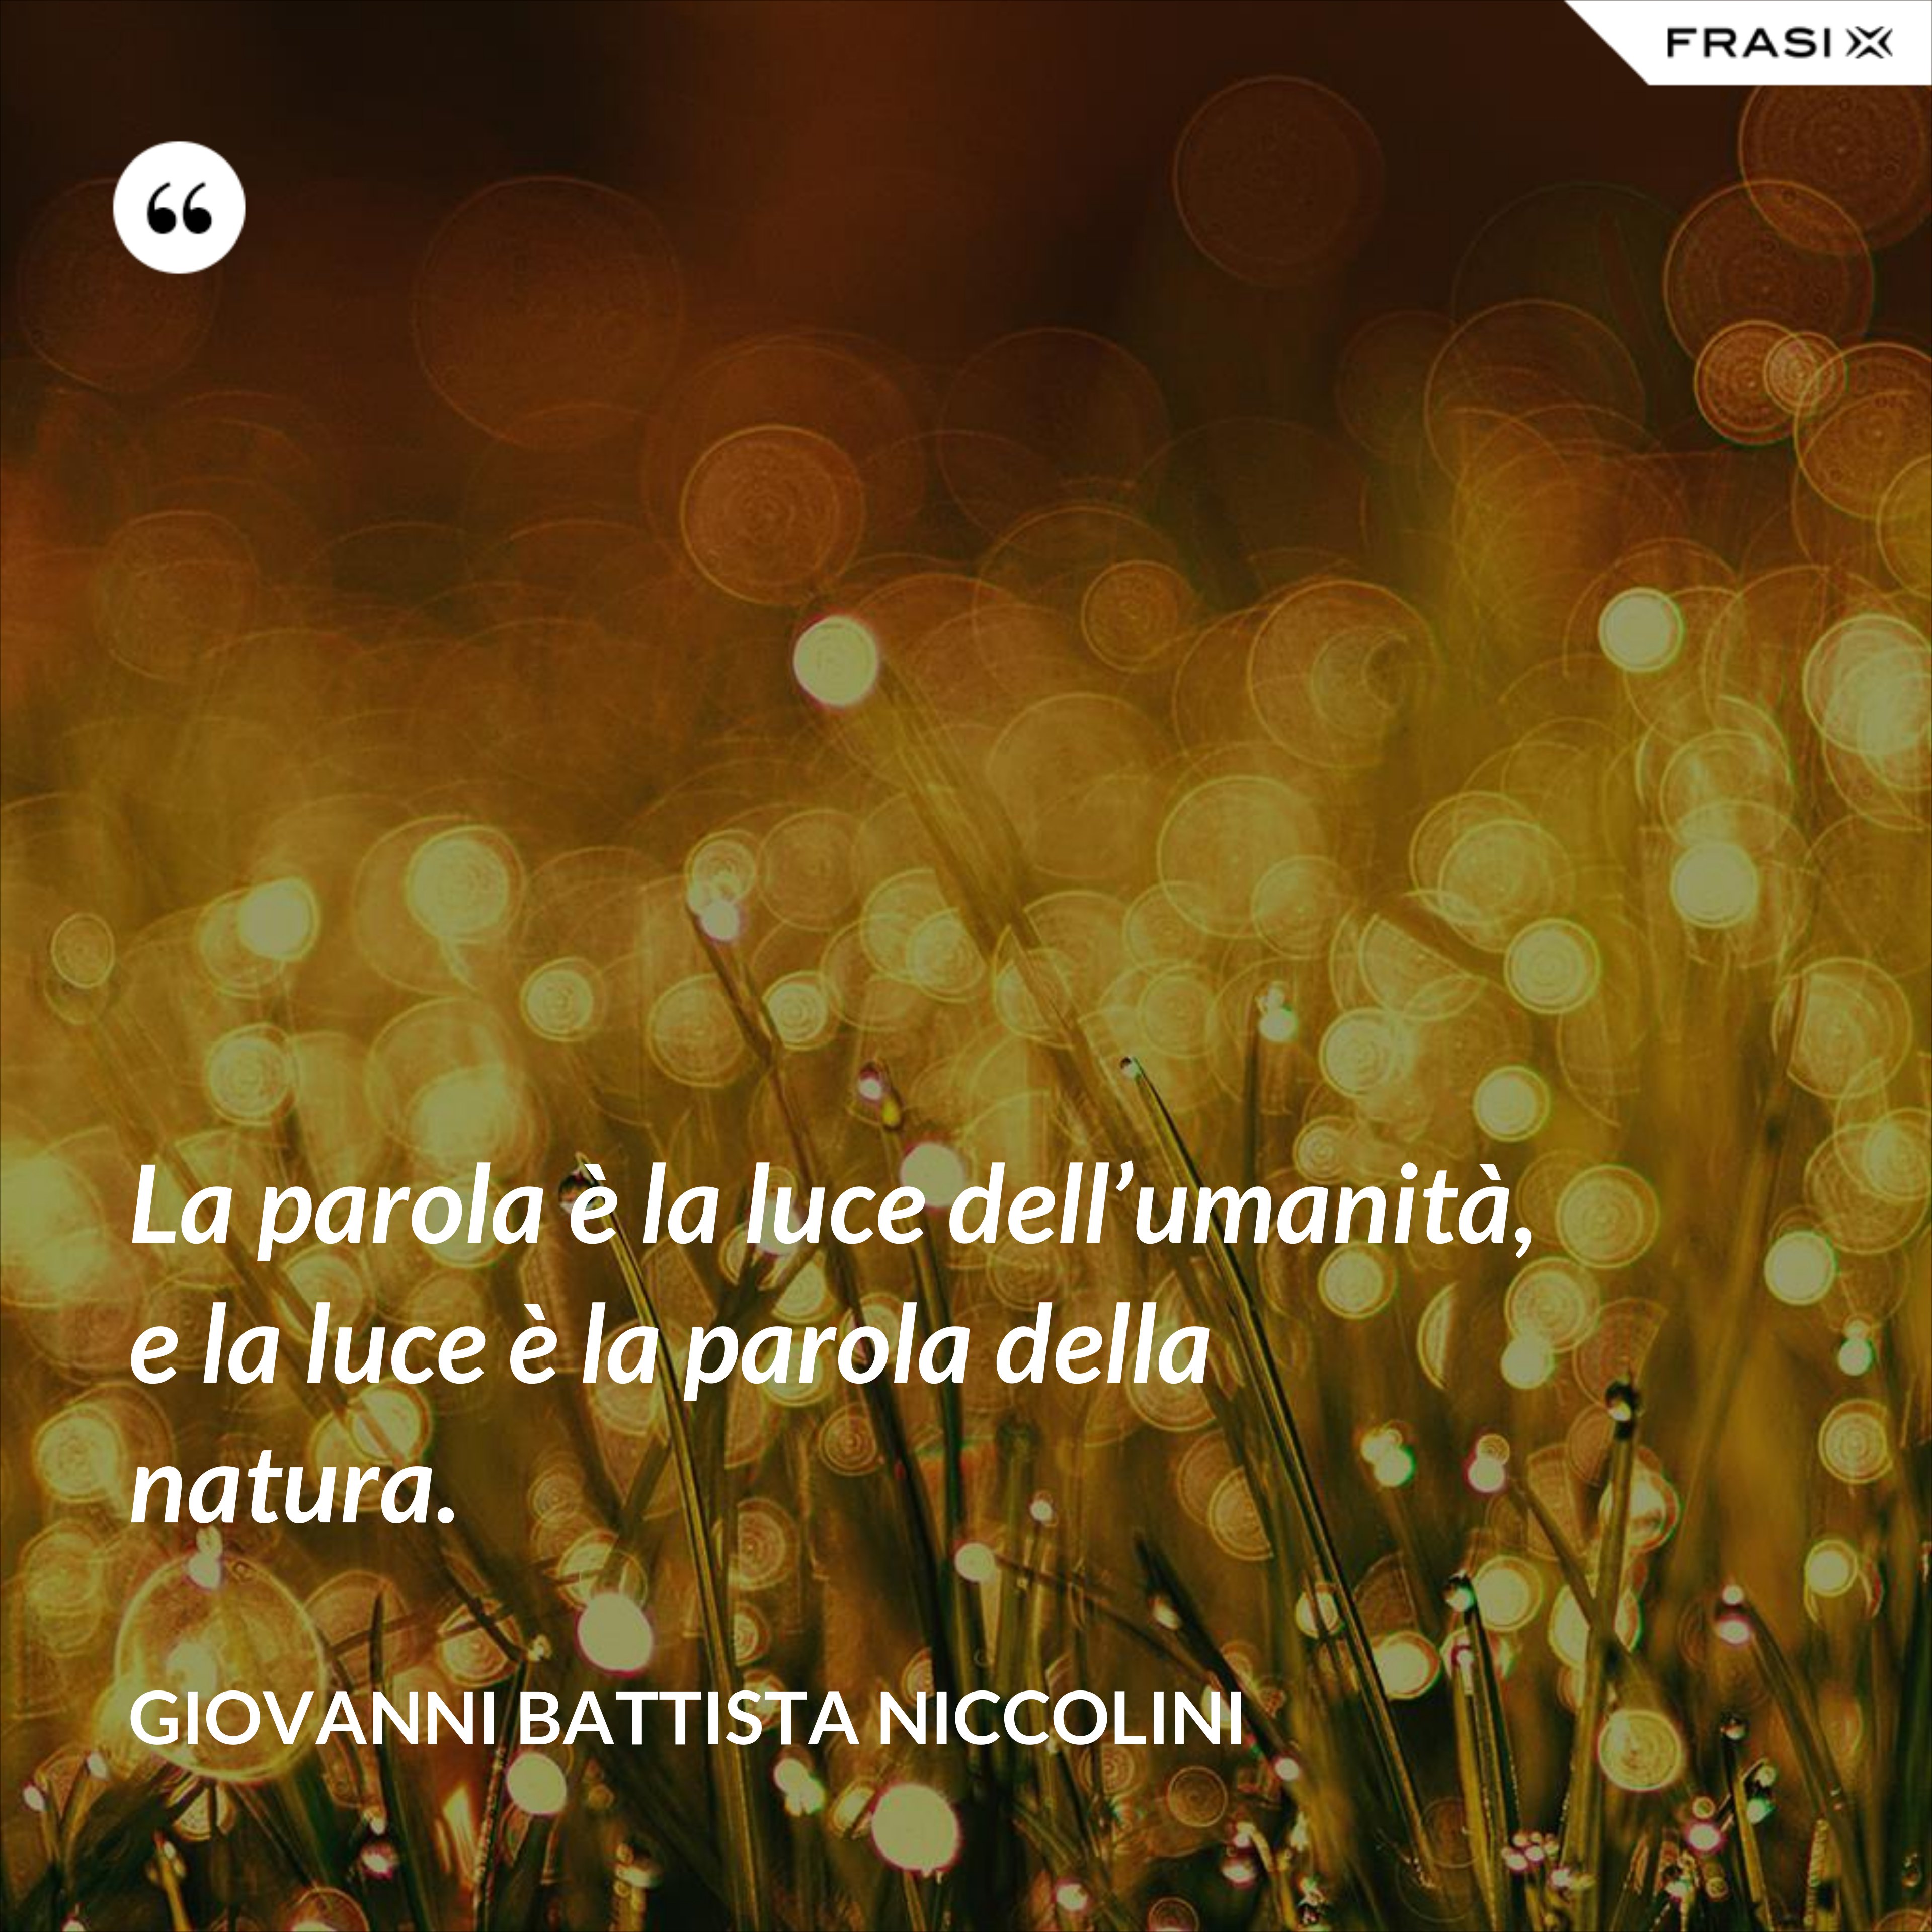 La parola è la luce dell’umanità, e la luce è la parola della natura. - Giovanni Battista Niccolini